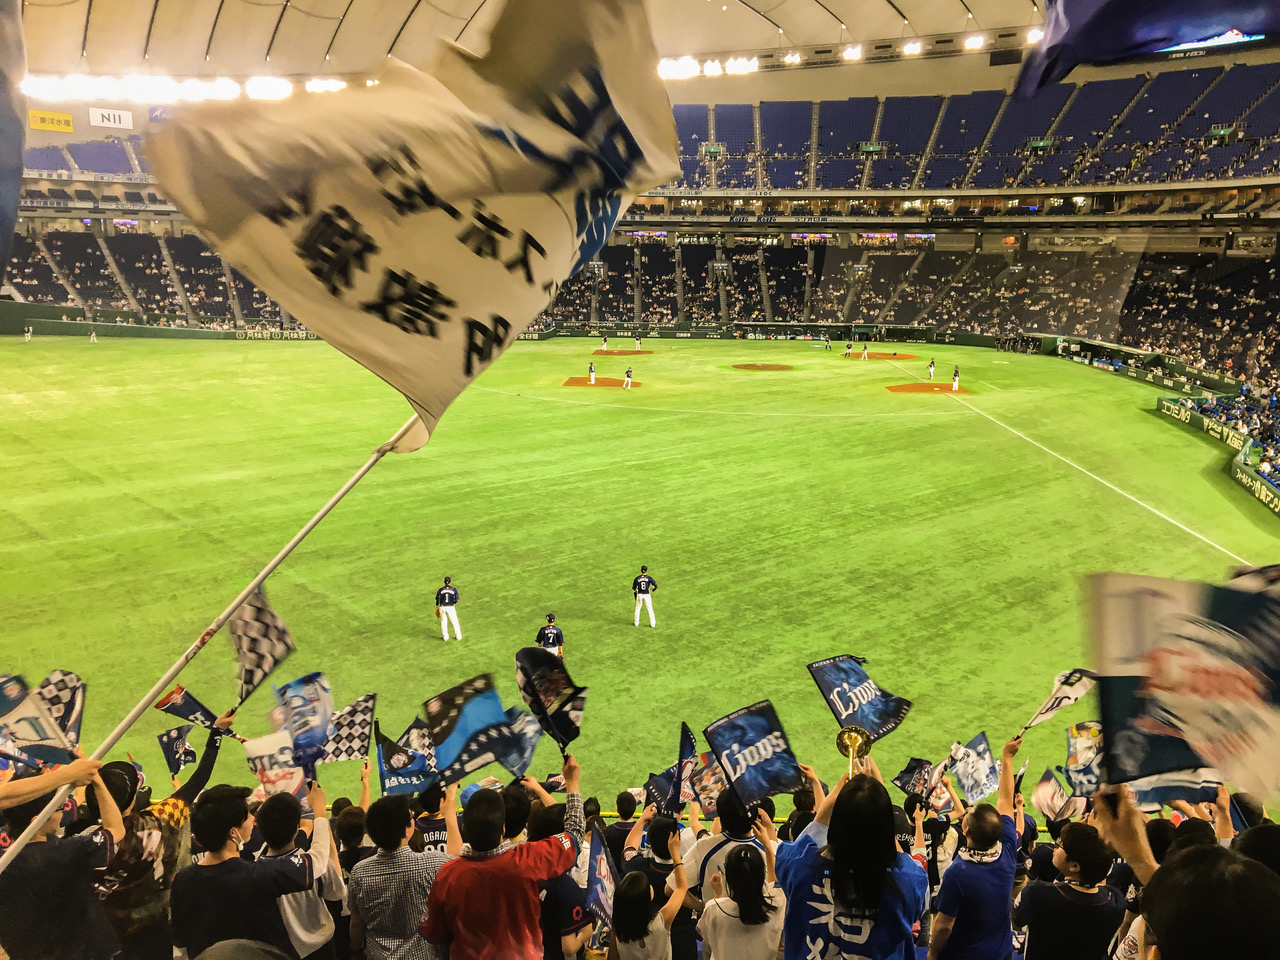 Visiter Tokyo et assister à un match de baseball